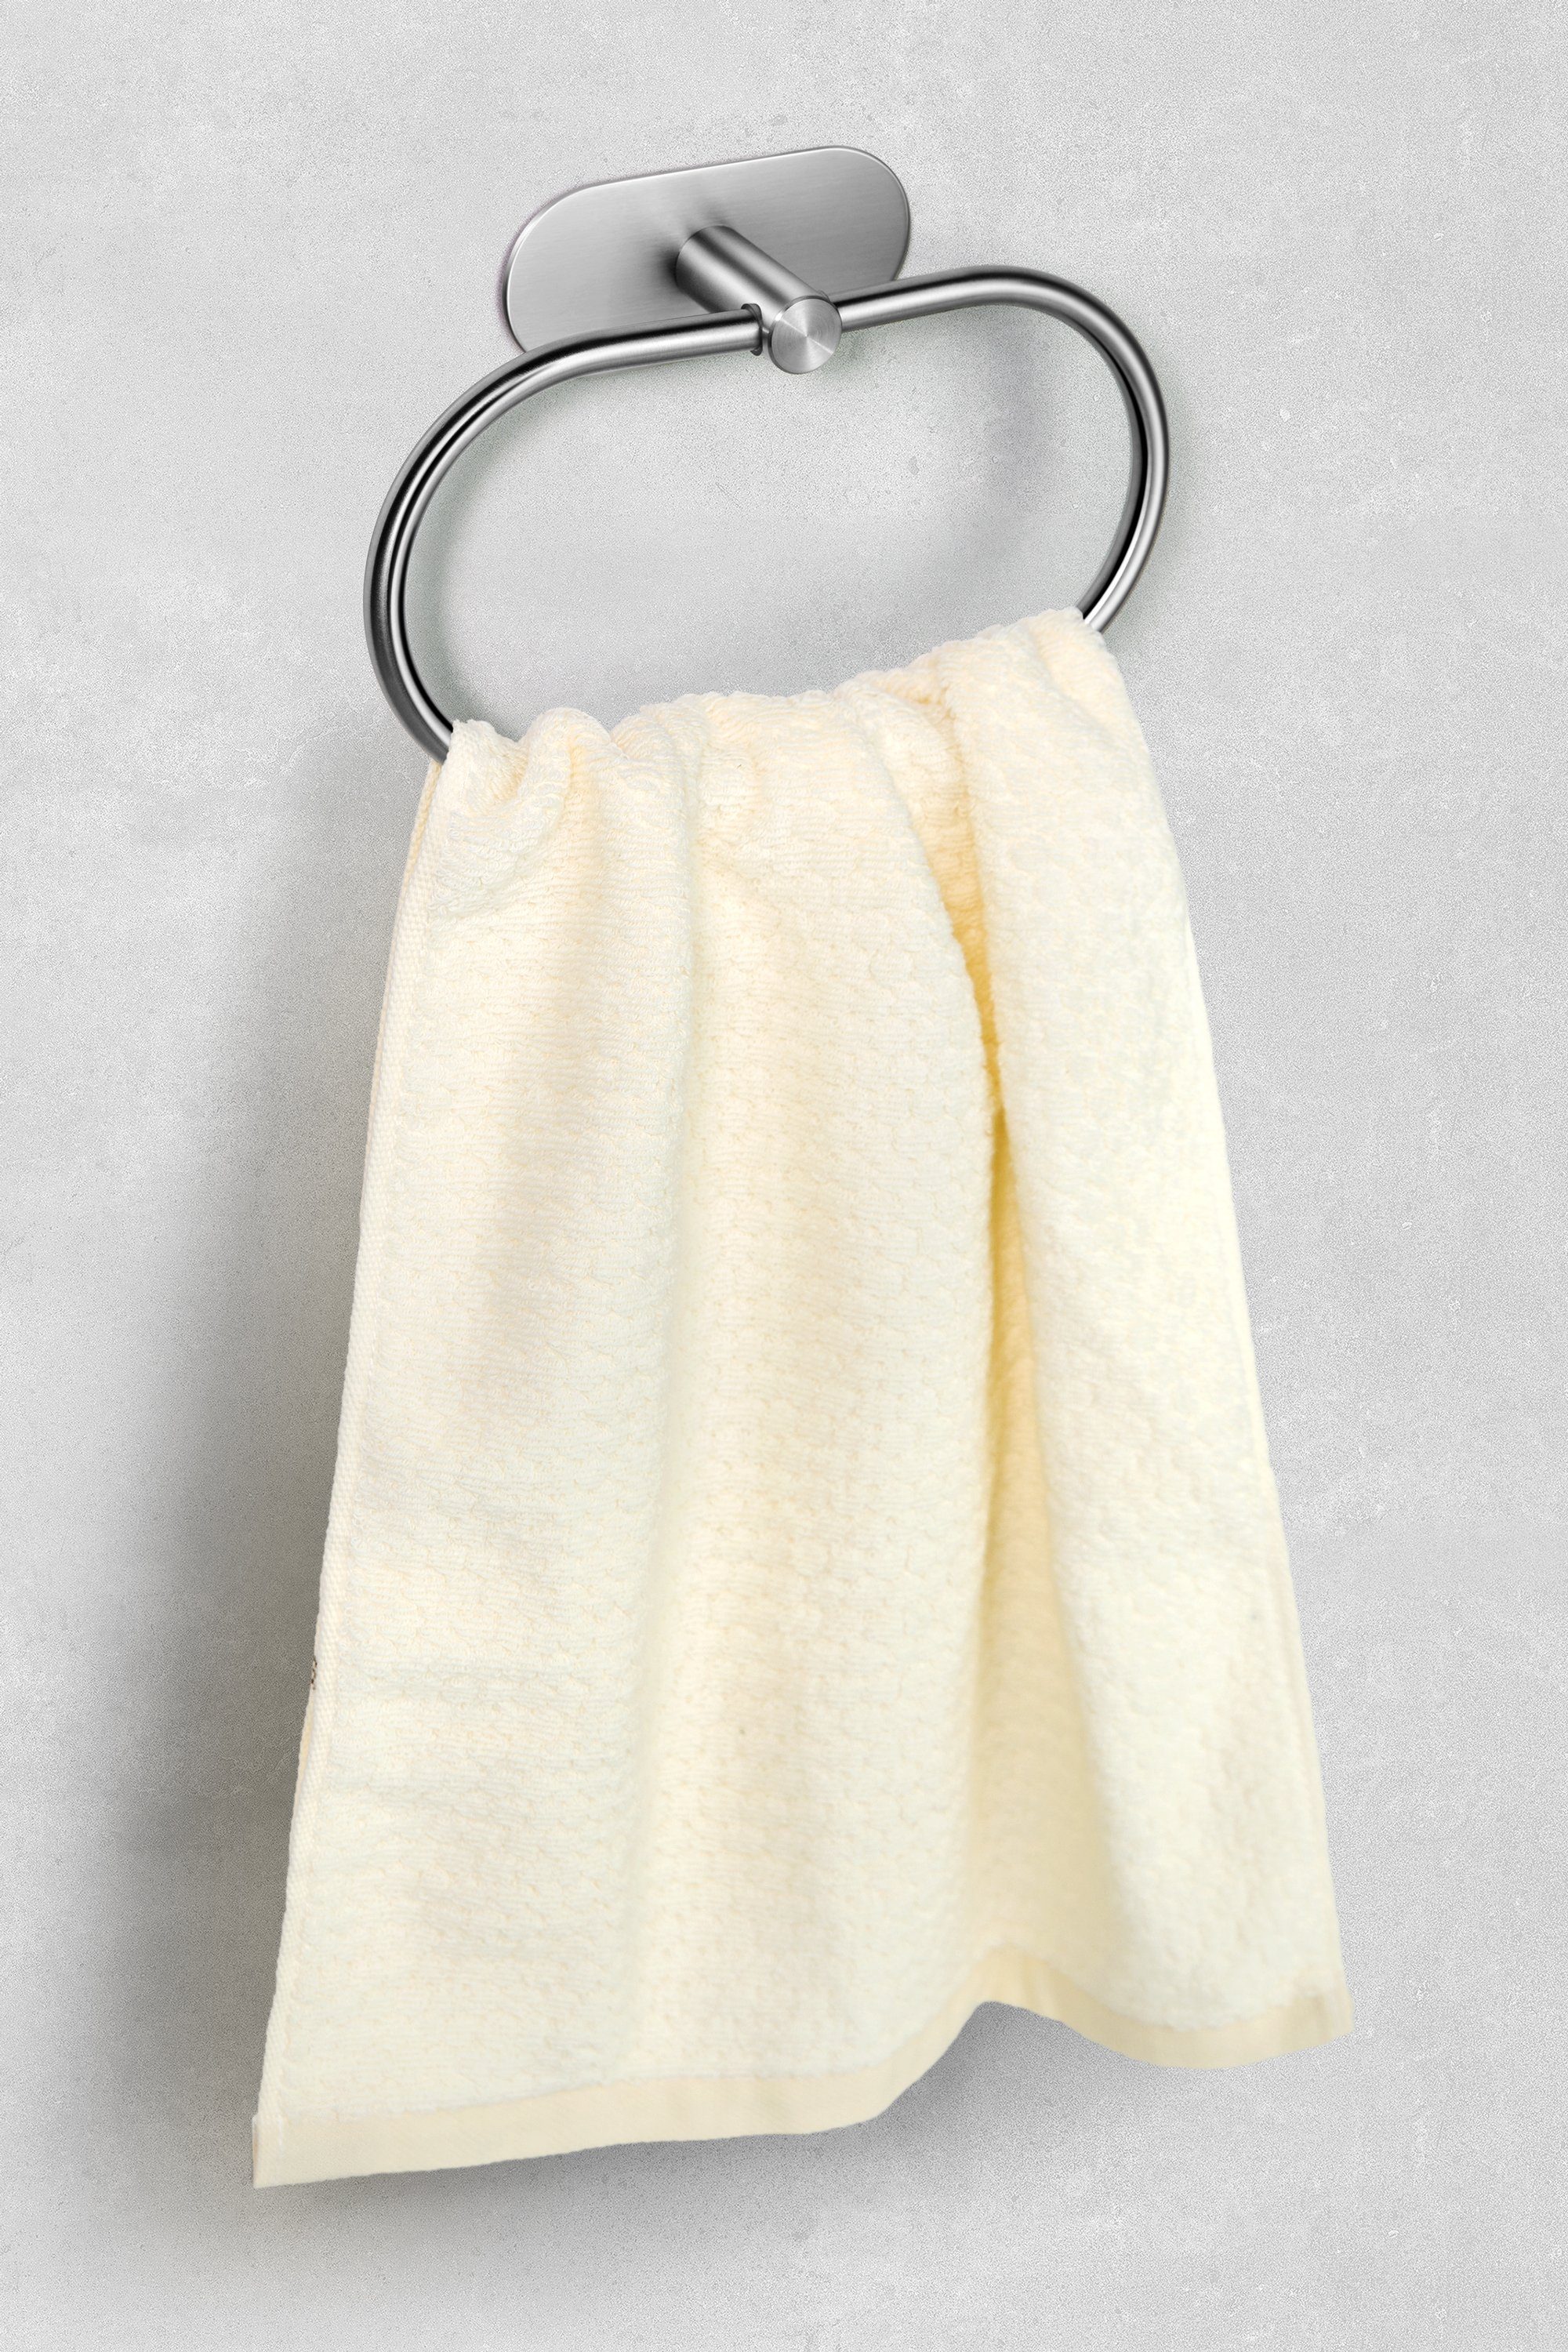 Ambrosya Edelstahl Bad Montage Handtuchhalter aus Silber Halter Handtuchhaken Handtuch Klebehaken WC Einfache Klebend Küche, Handtuchring Haken Selbstklebender